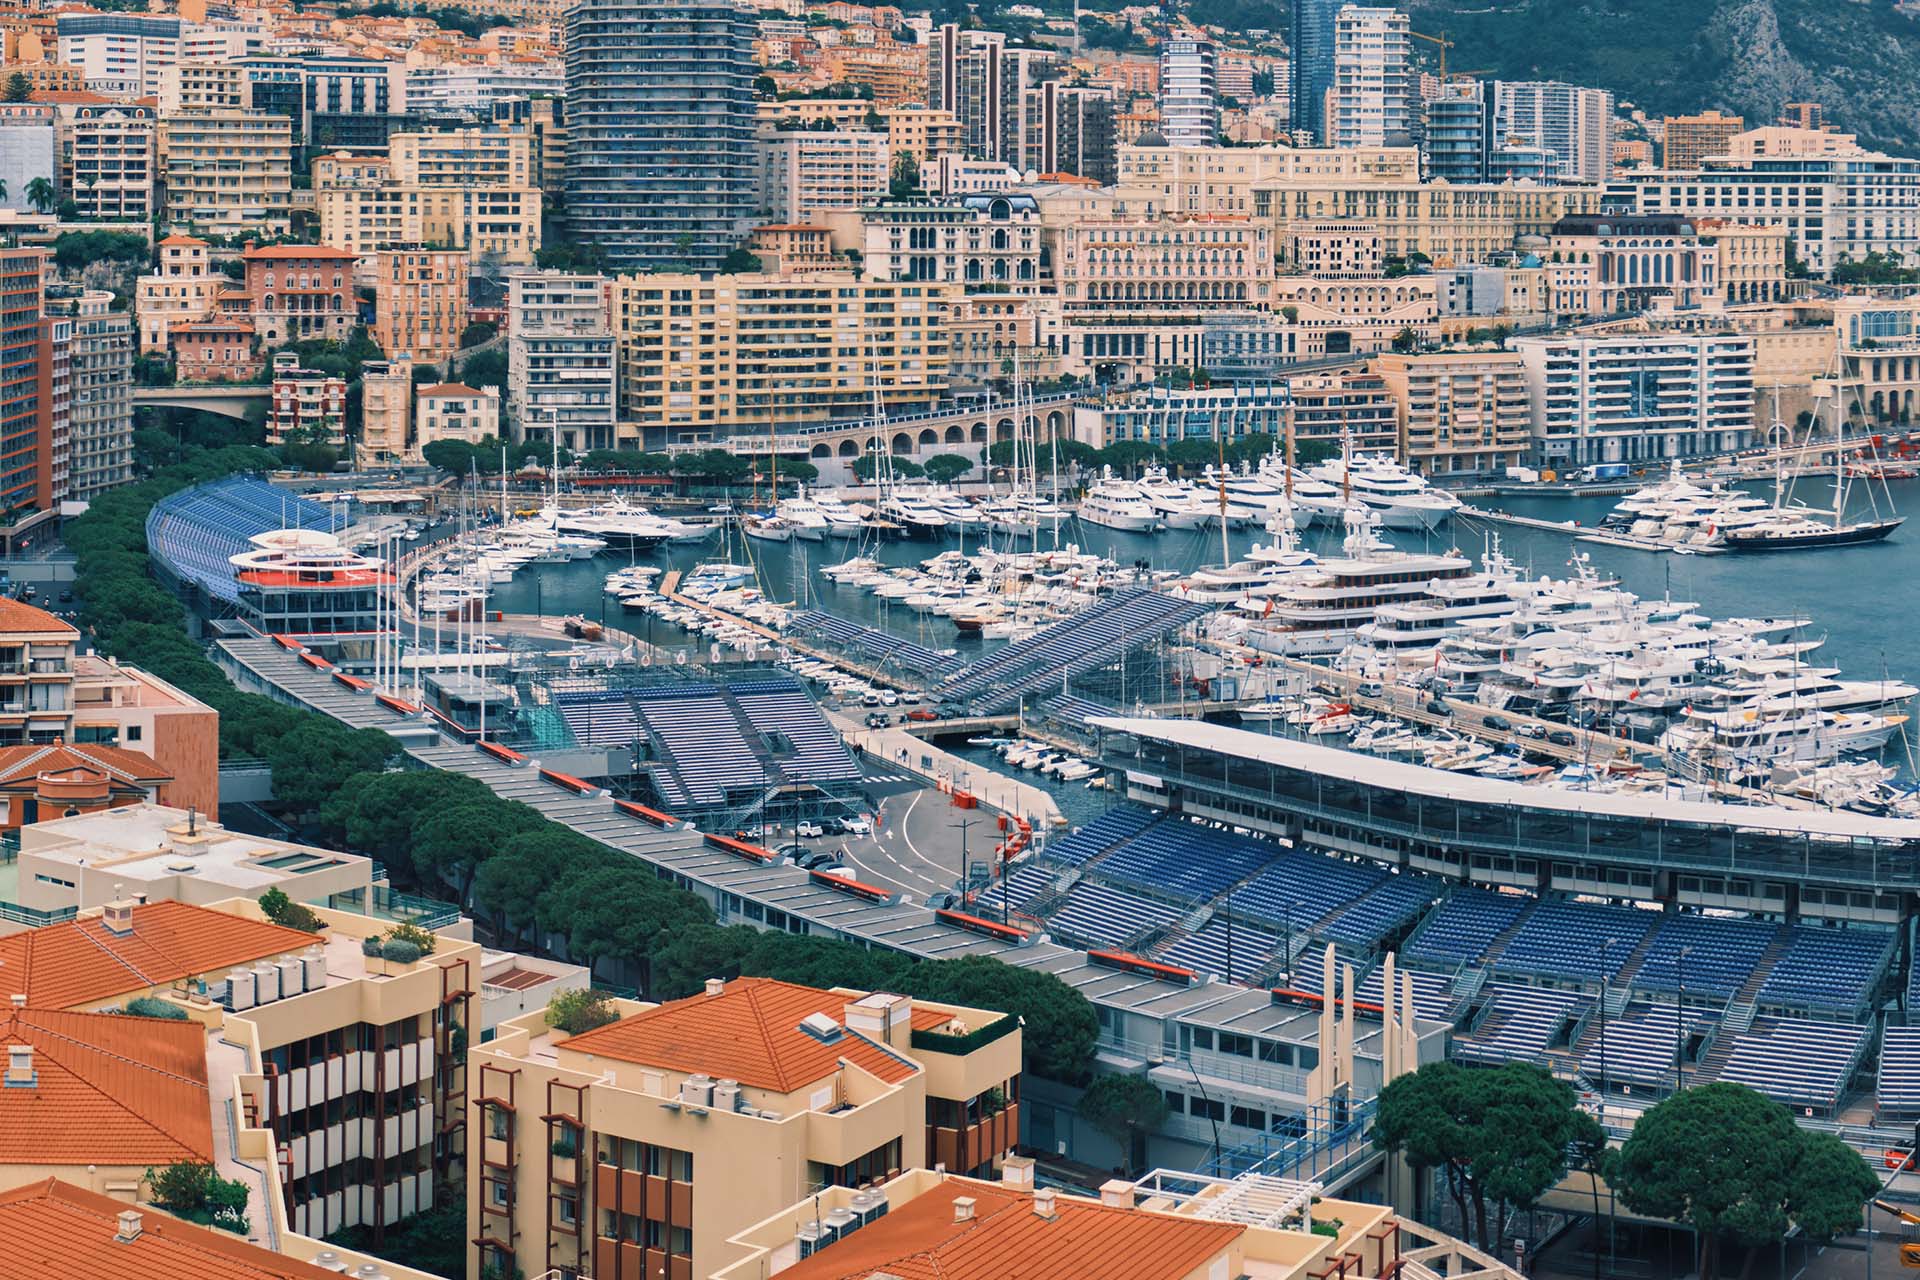 F1 Monaco Grand Prix 2022